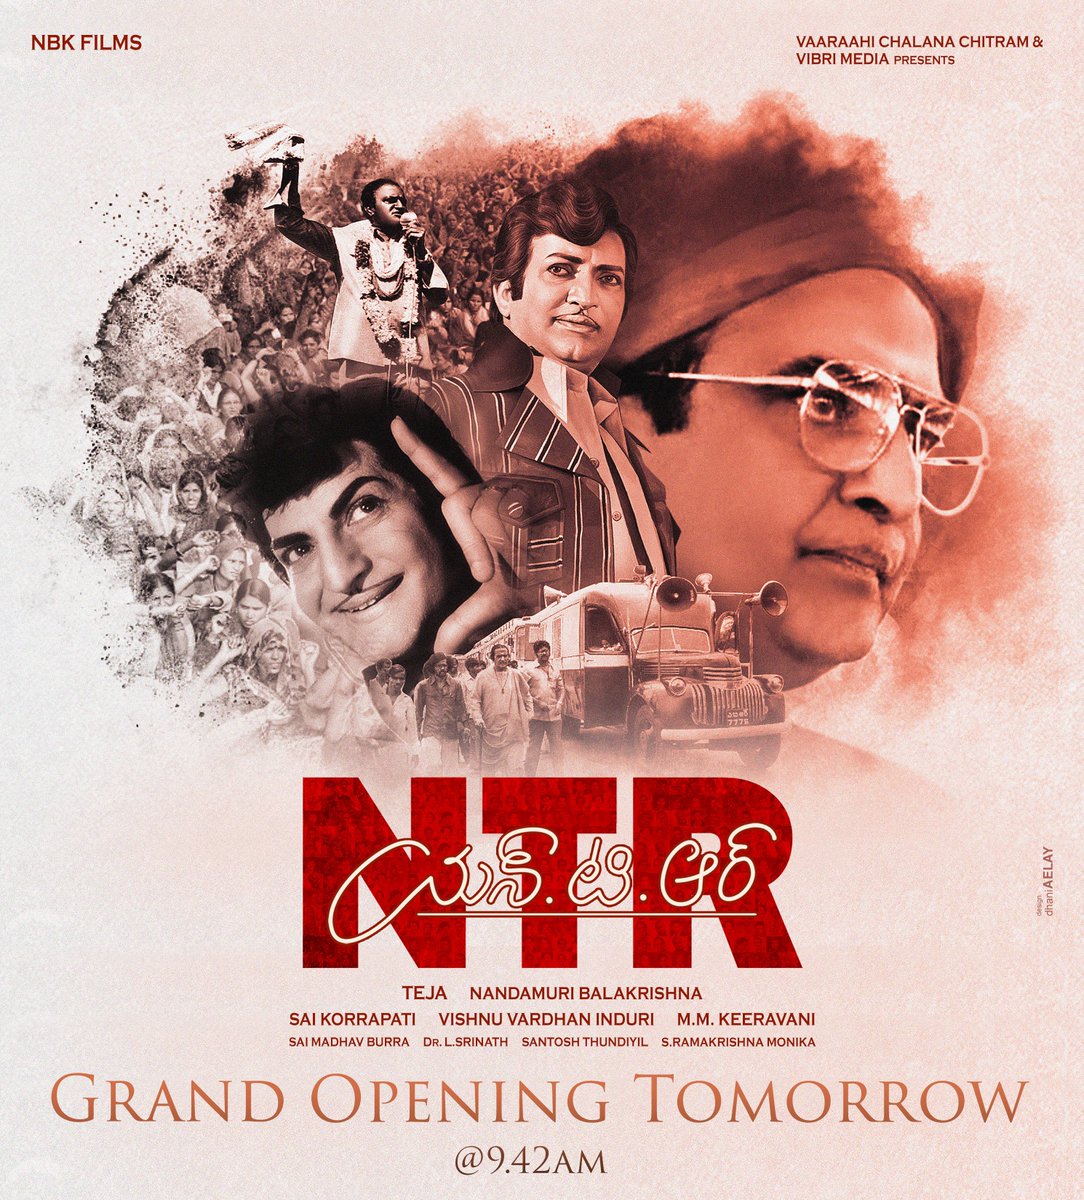 వెండితెర ఇలవేల్పు..తెలుగు ప్రజల ఆరాధ్యుడు..తారక రాముని మహా ప్రస్థానం
#NTRBiopic Grand Opening Tomorrow,
#NBK103 #NBK #VibriMedia 

design : @dhani_aelay